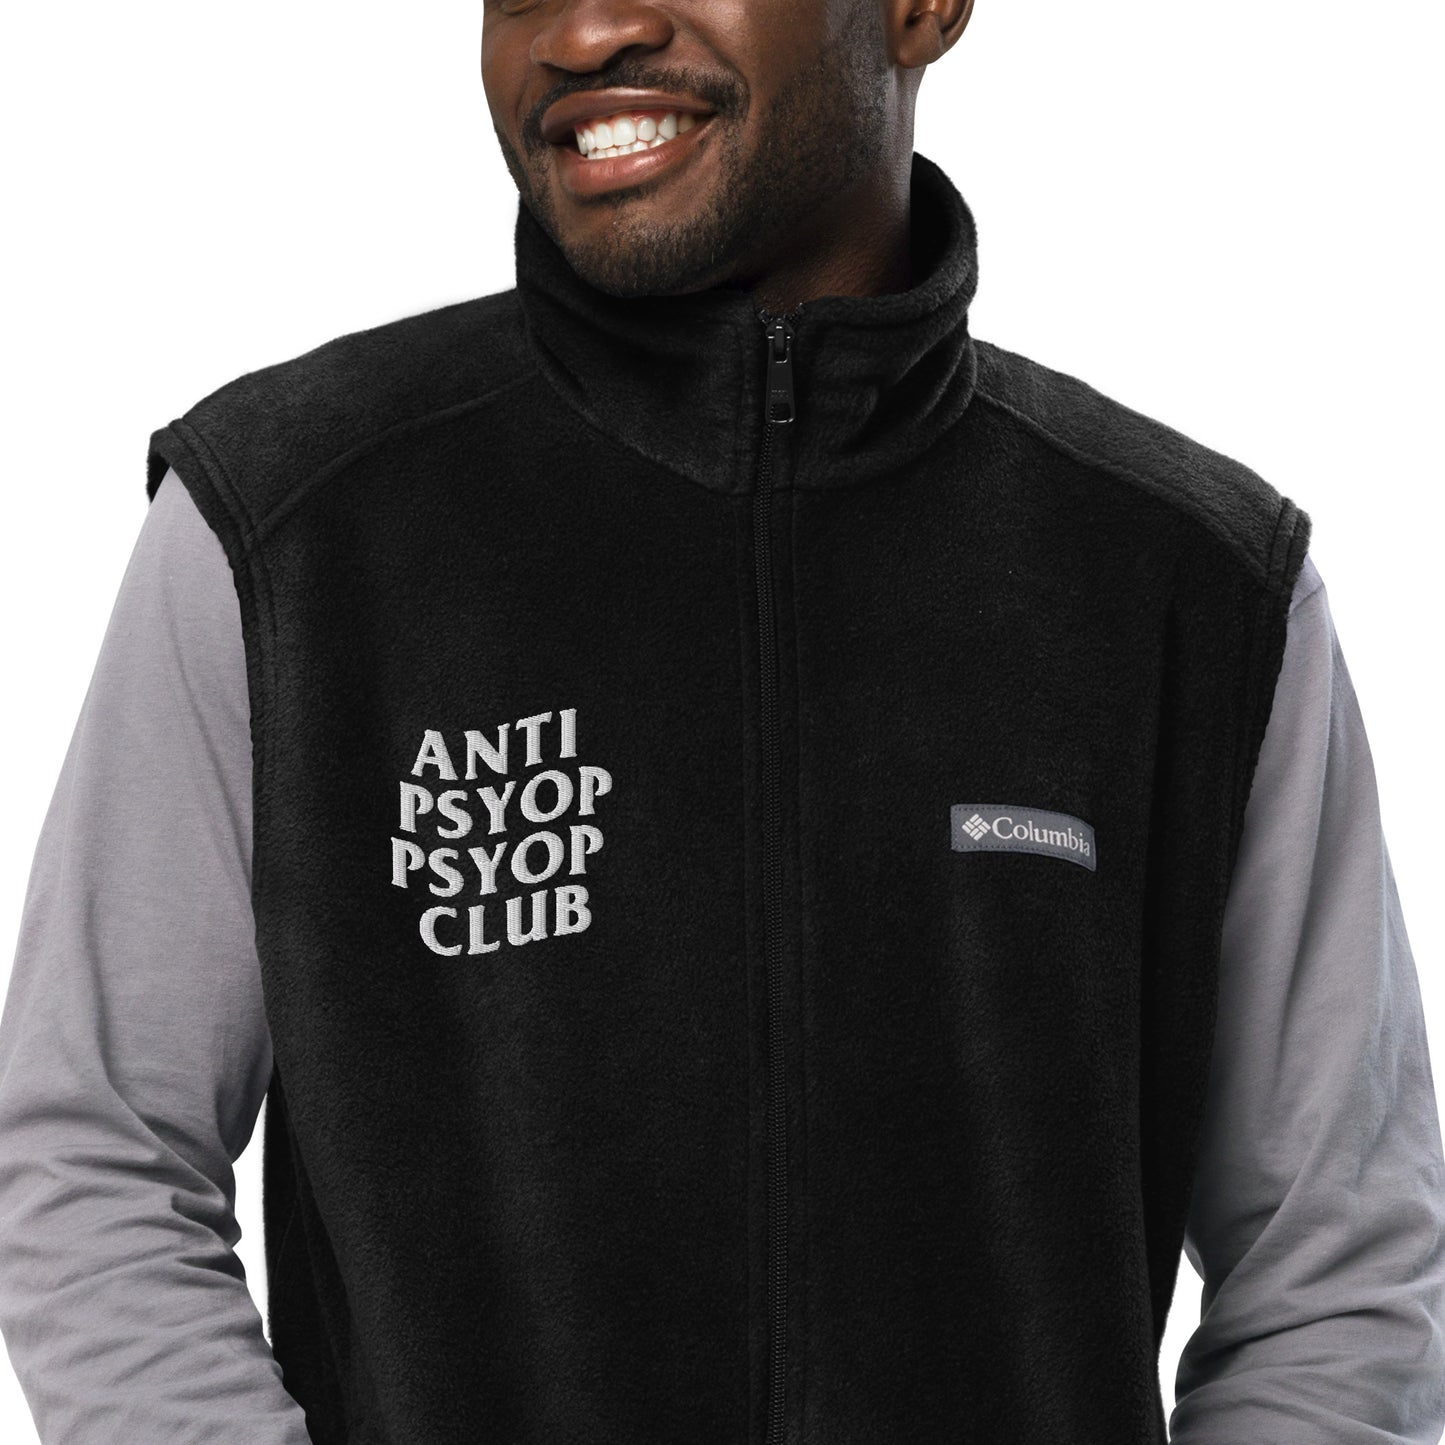 Z is For Zen Anti Psyop Psyop Club Columbia Fleece Vest